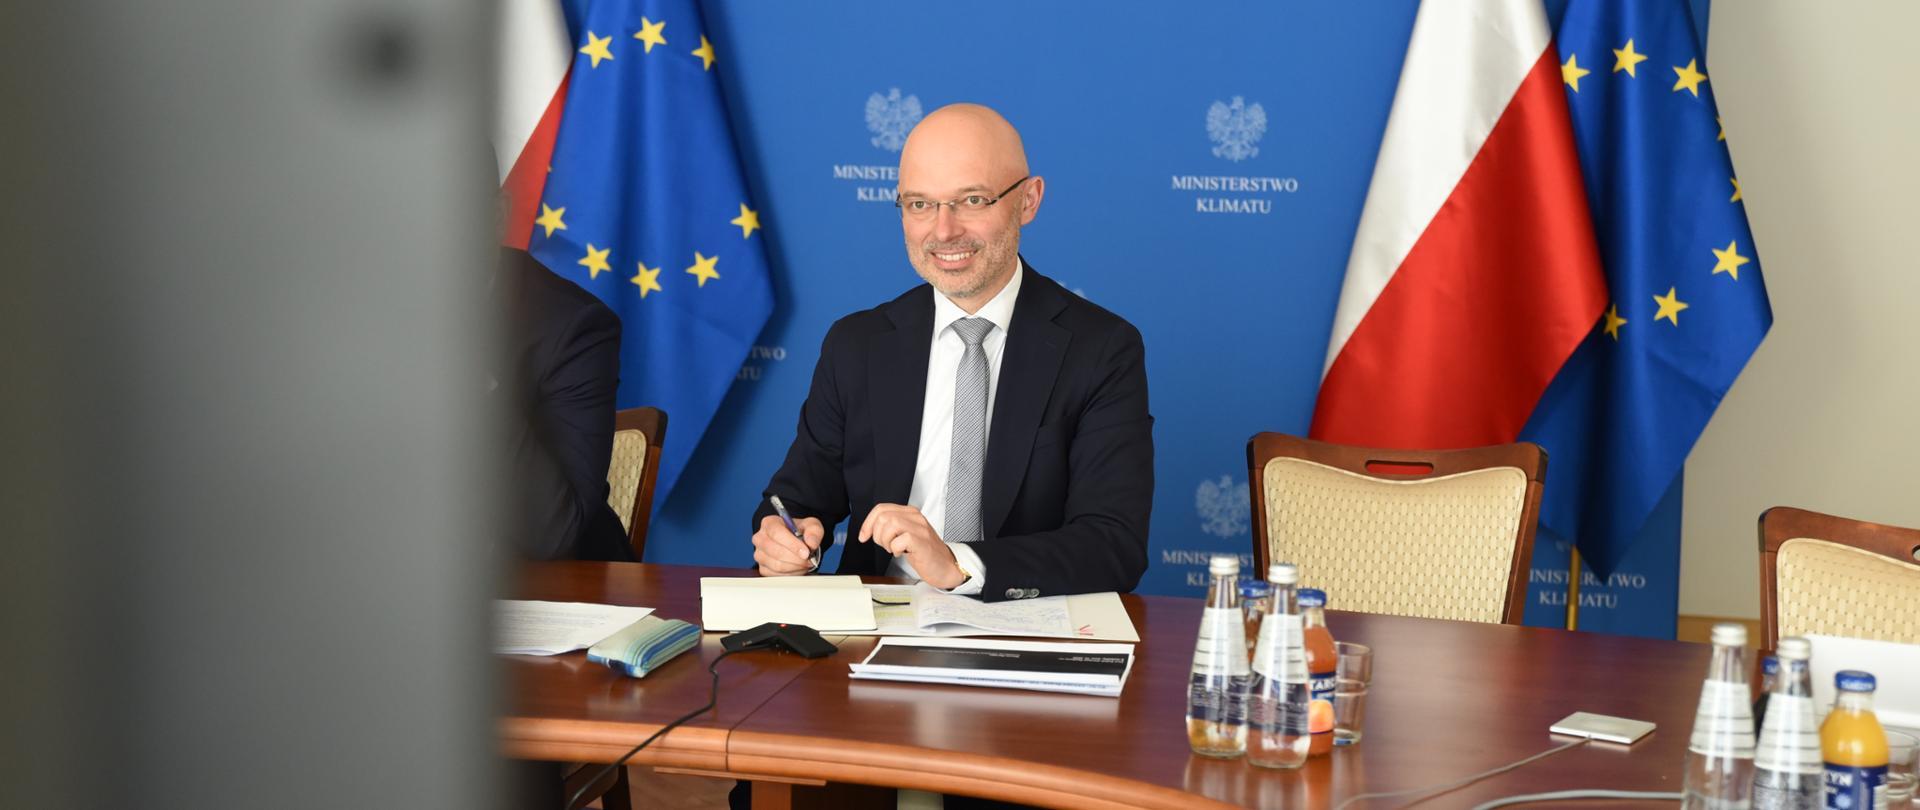 Minister klimatu Michał Kurtyka podczas Polsko-Niemieckiej Platformy ds. Elektromobilności